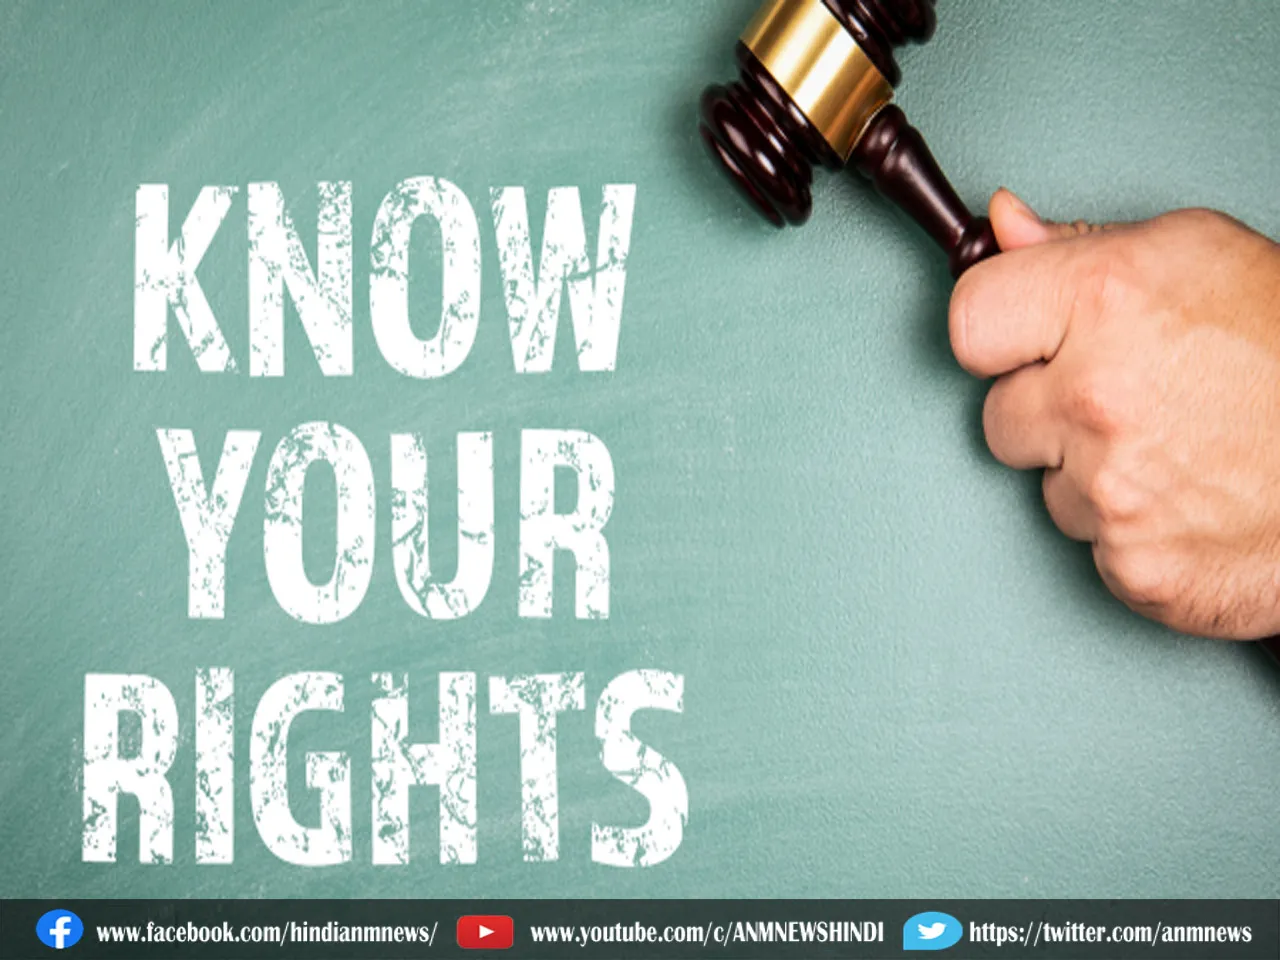 Know Your Rights: अगर कोई गाली या धमकी दे रहा है तो घबराएं नहीं, कानून से मिले हैं ये अधिकार